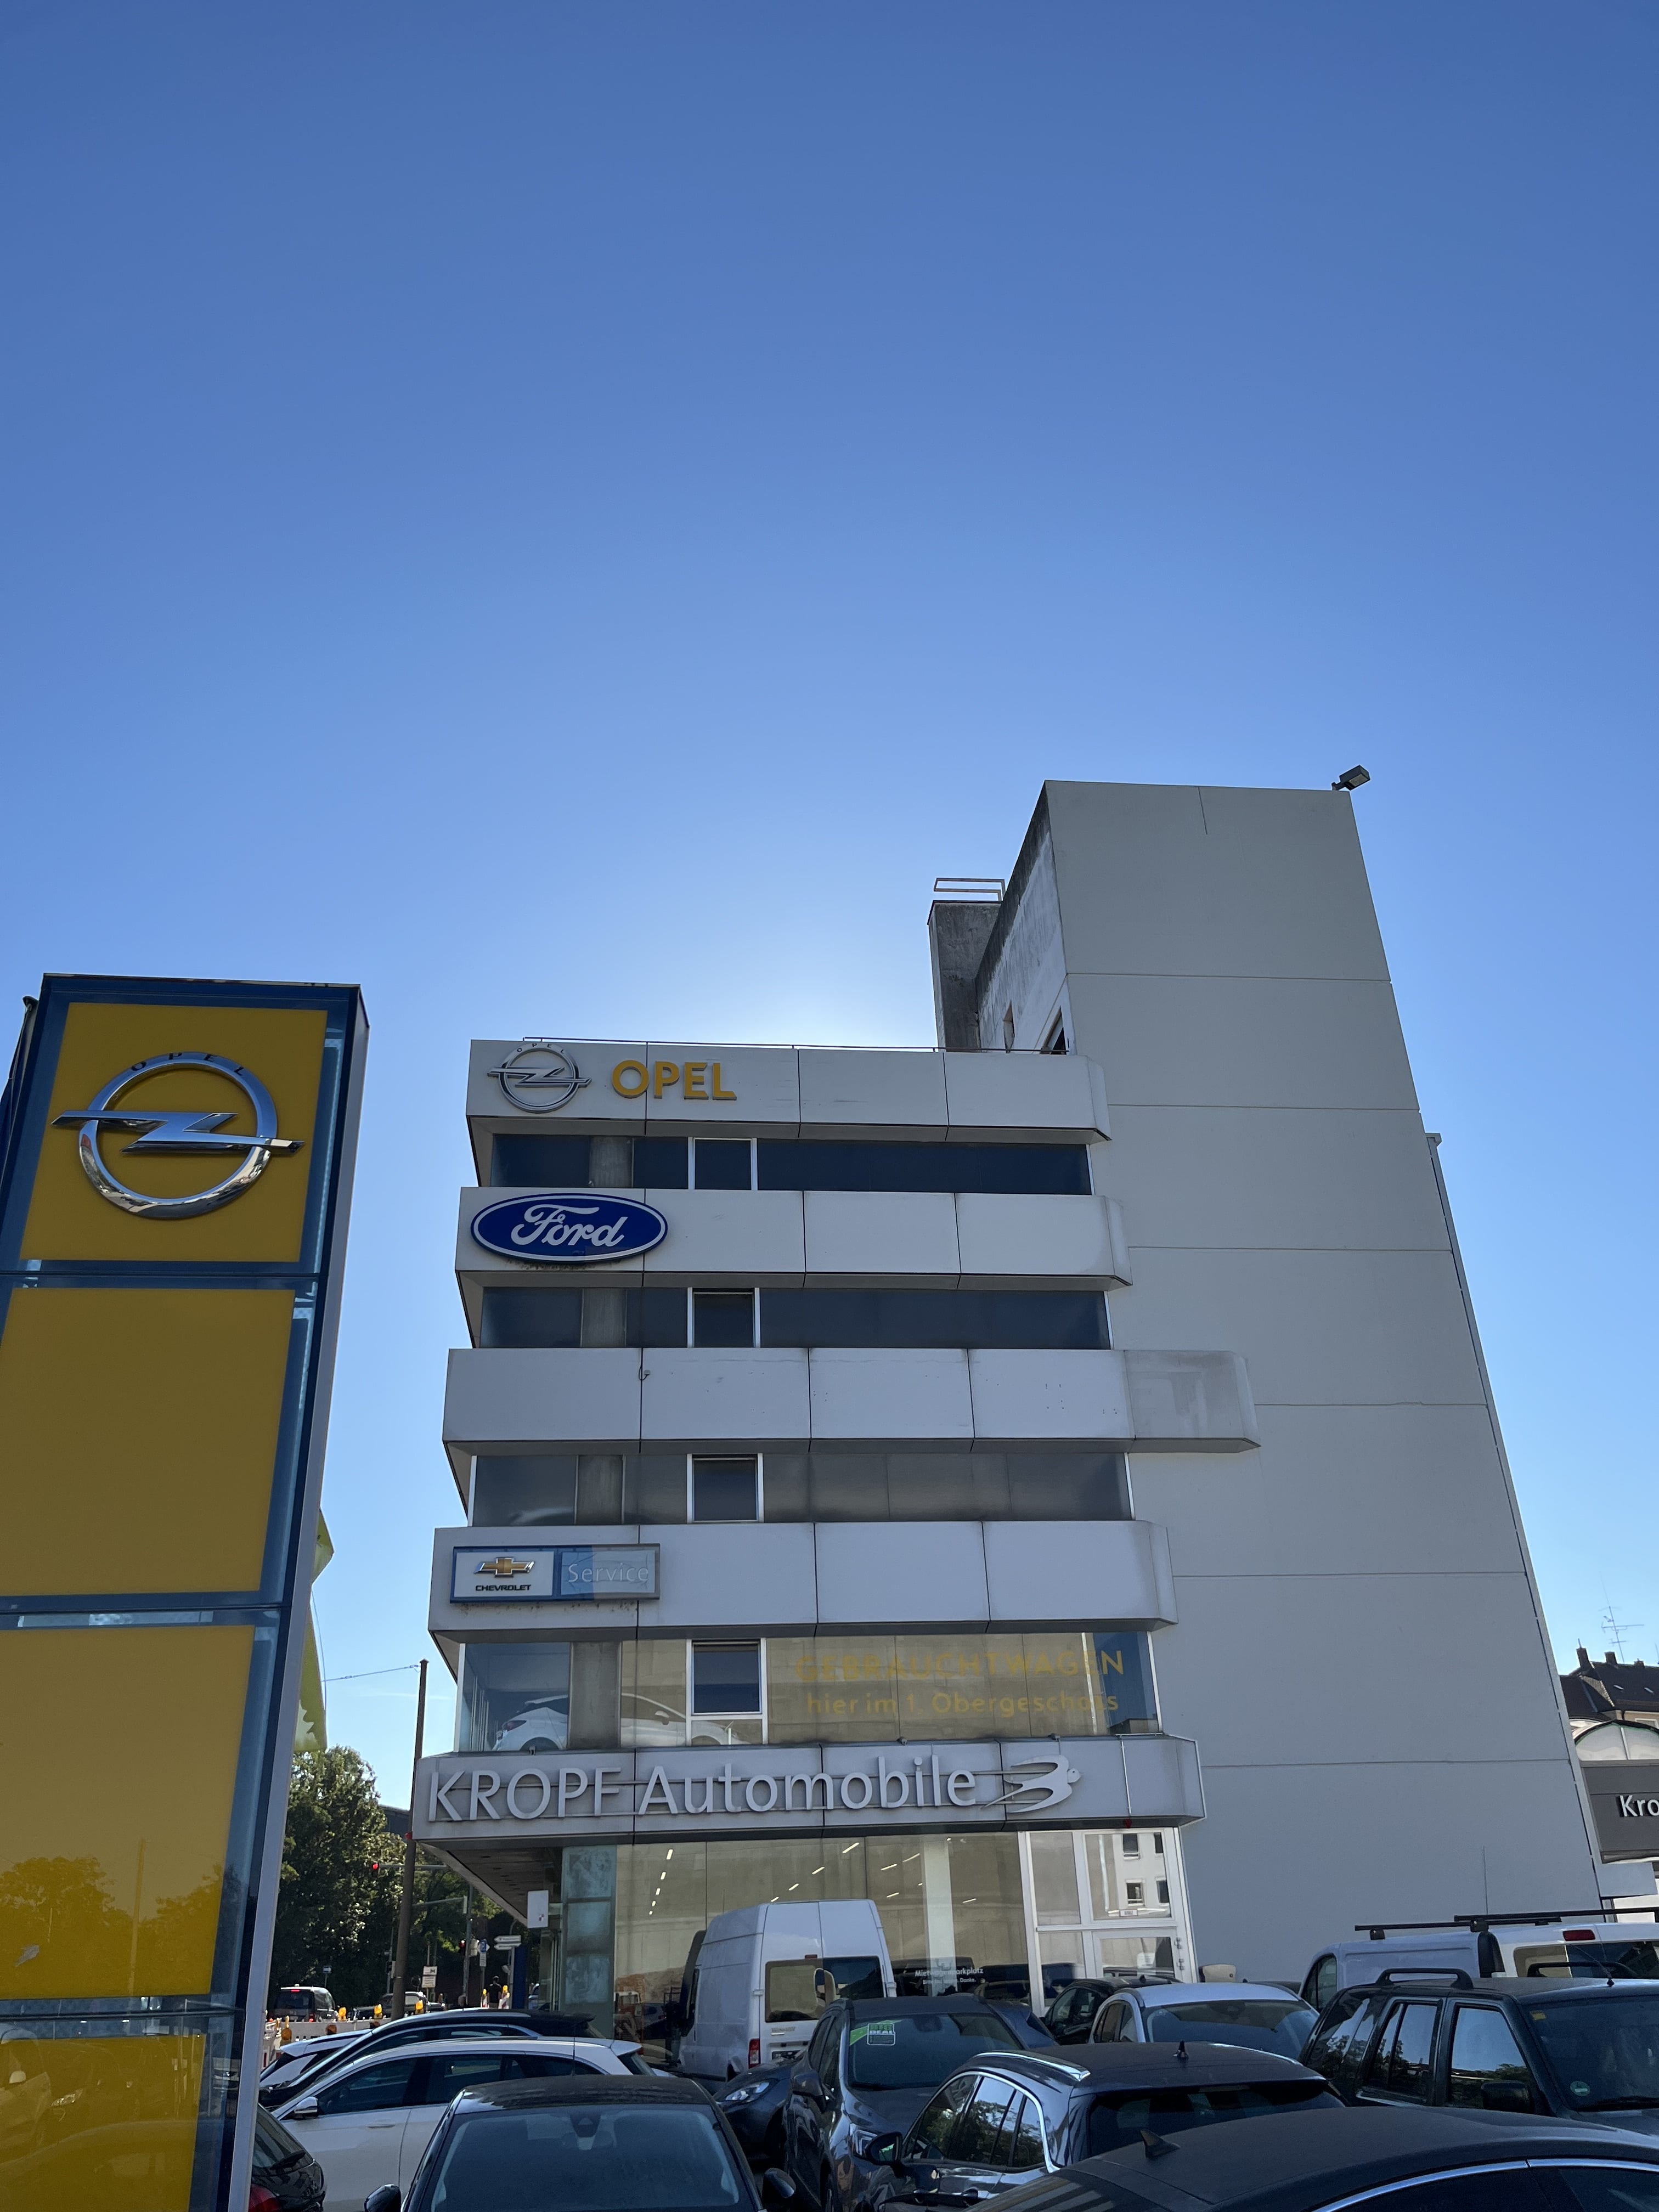 Autohaus Kropf Außenansicht Geäude mit Opel Tafel